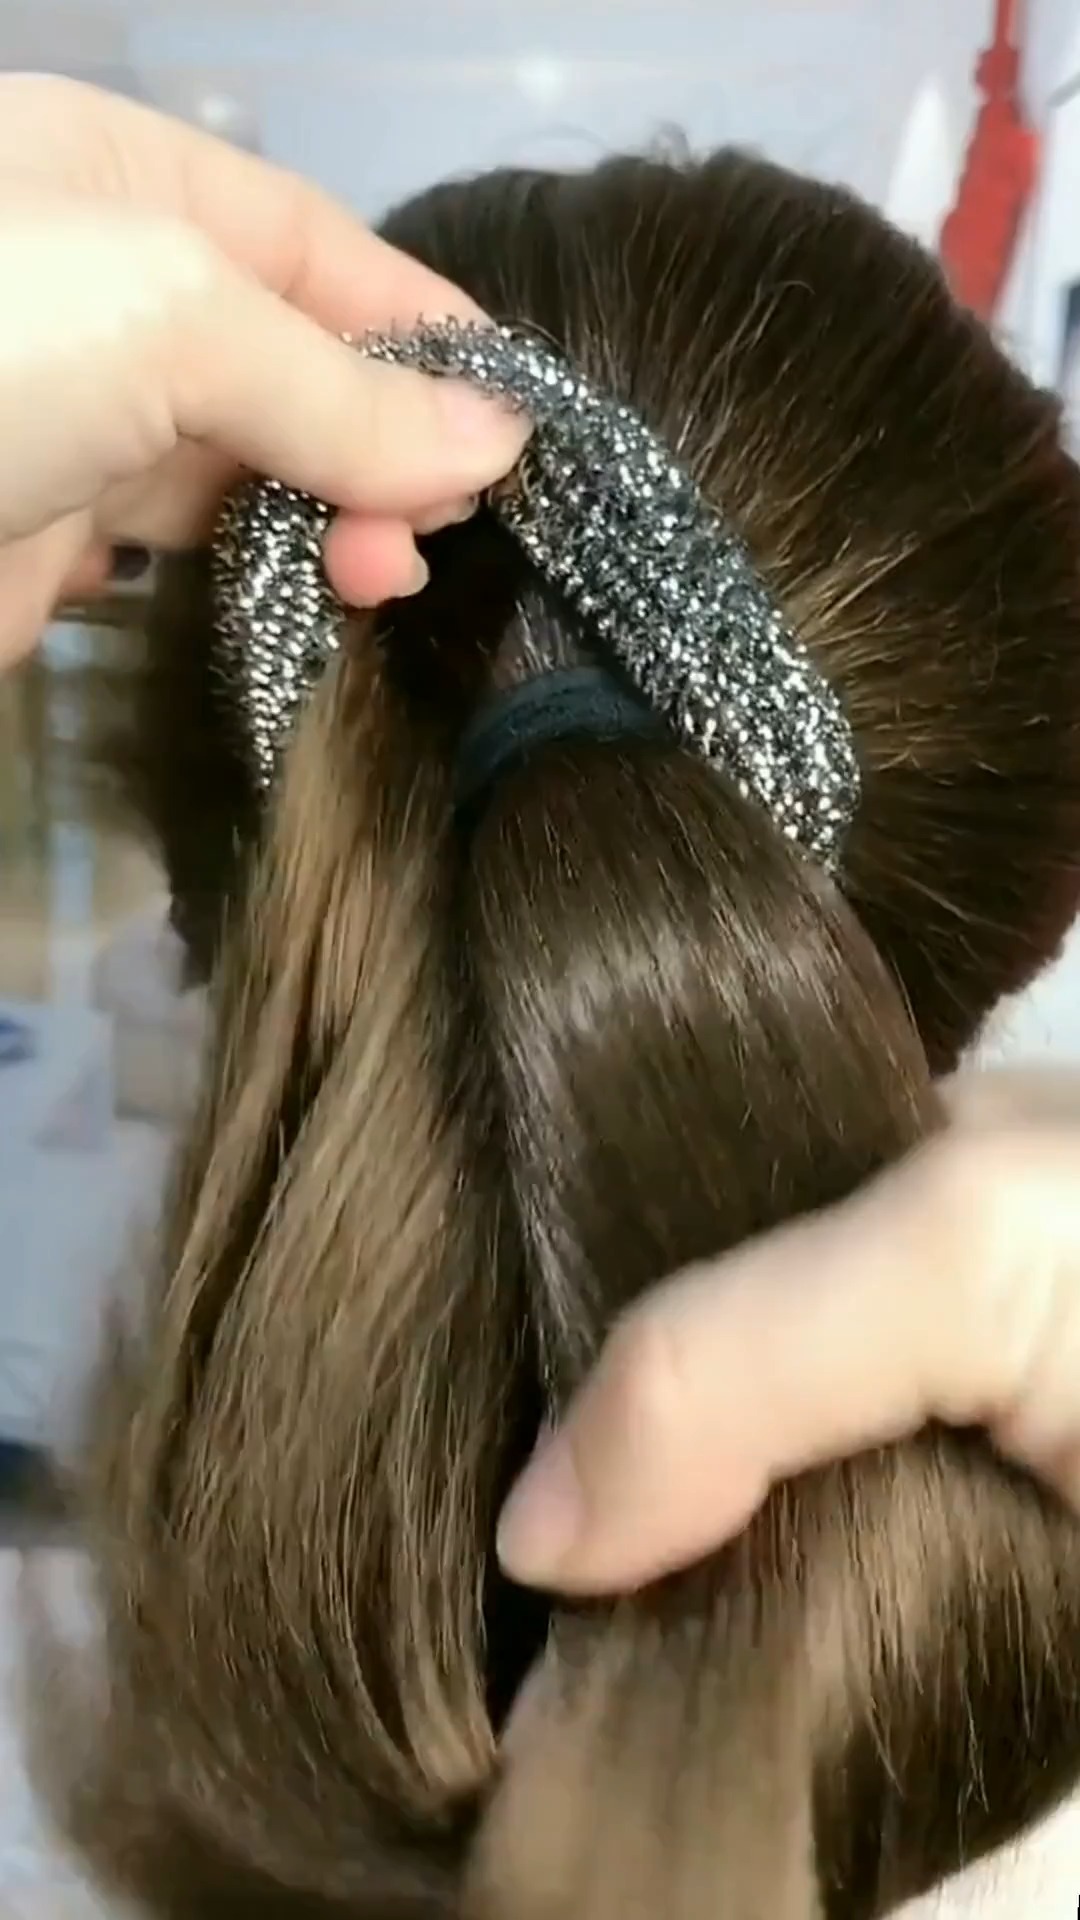 这是一款新的发型用钢丝做的丸子头女孩子学起来吧